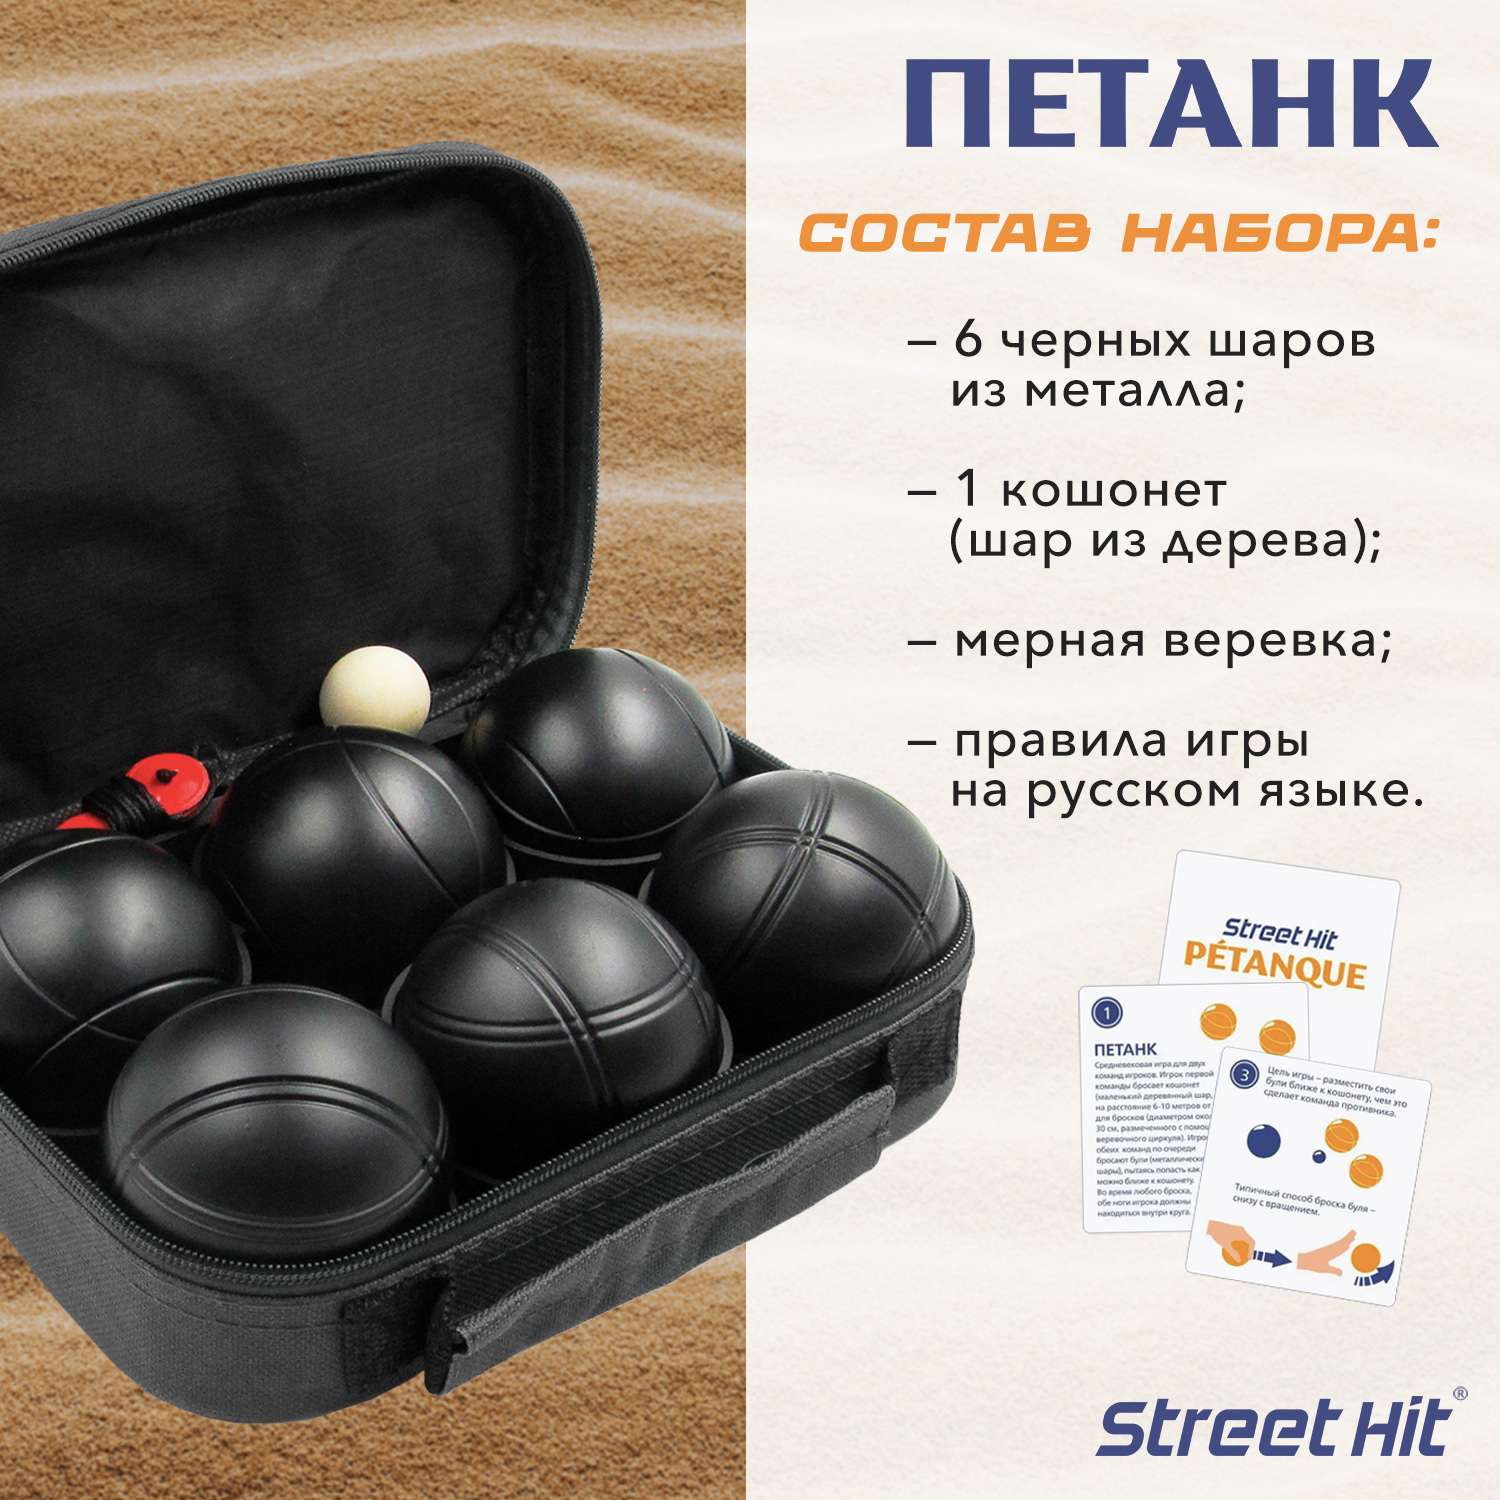 Набор для игры Street Hit Петанк Бочче 6 шаров черный - фото 2